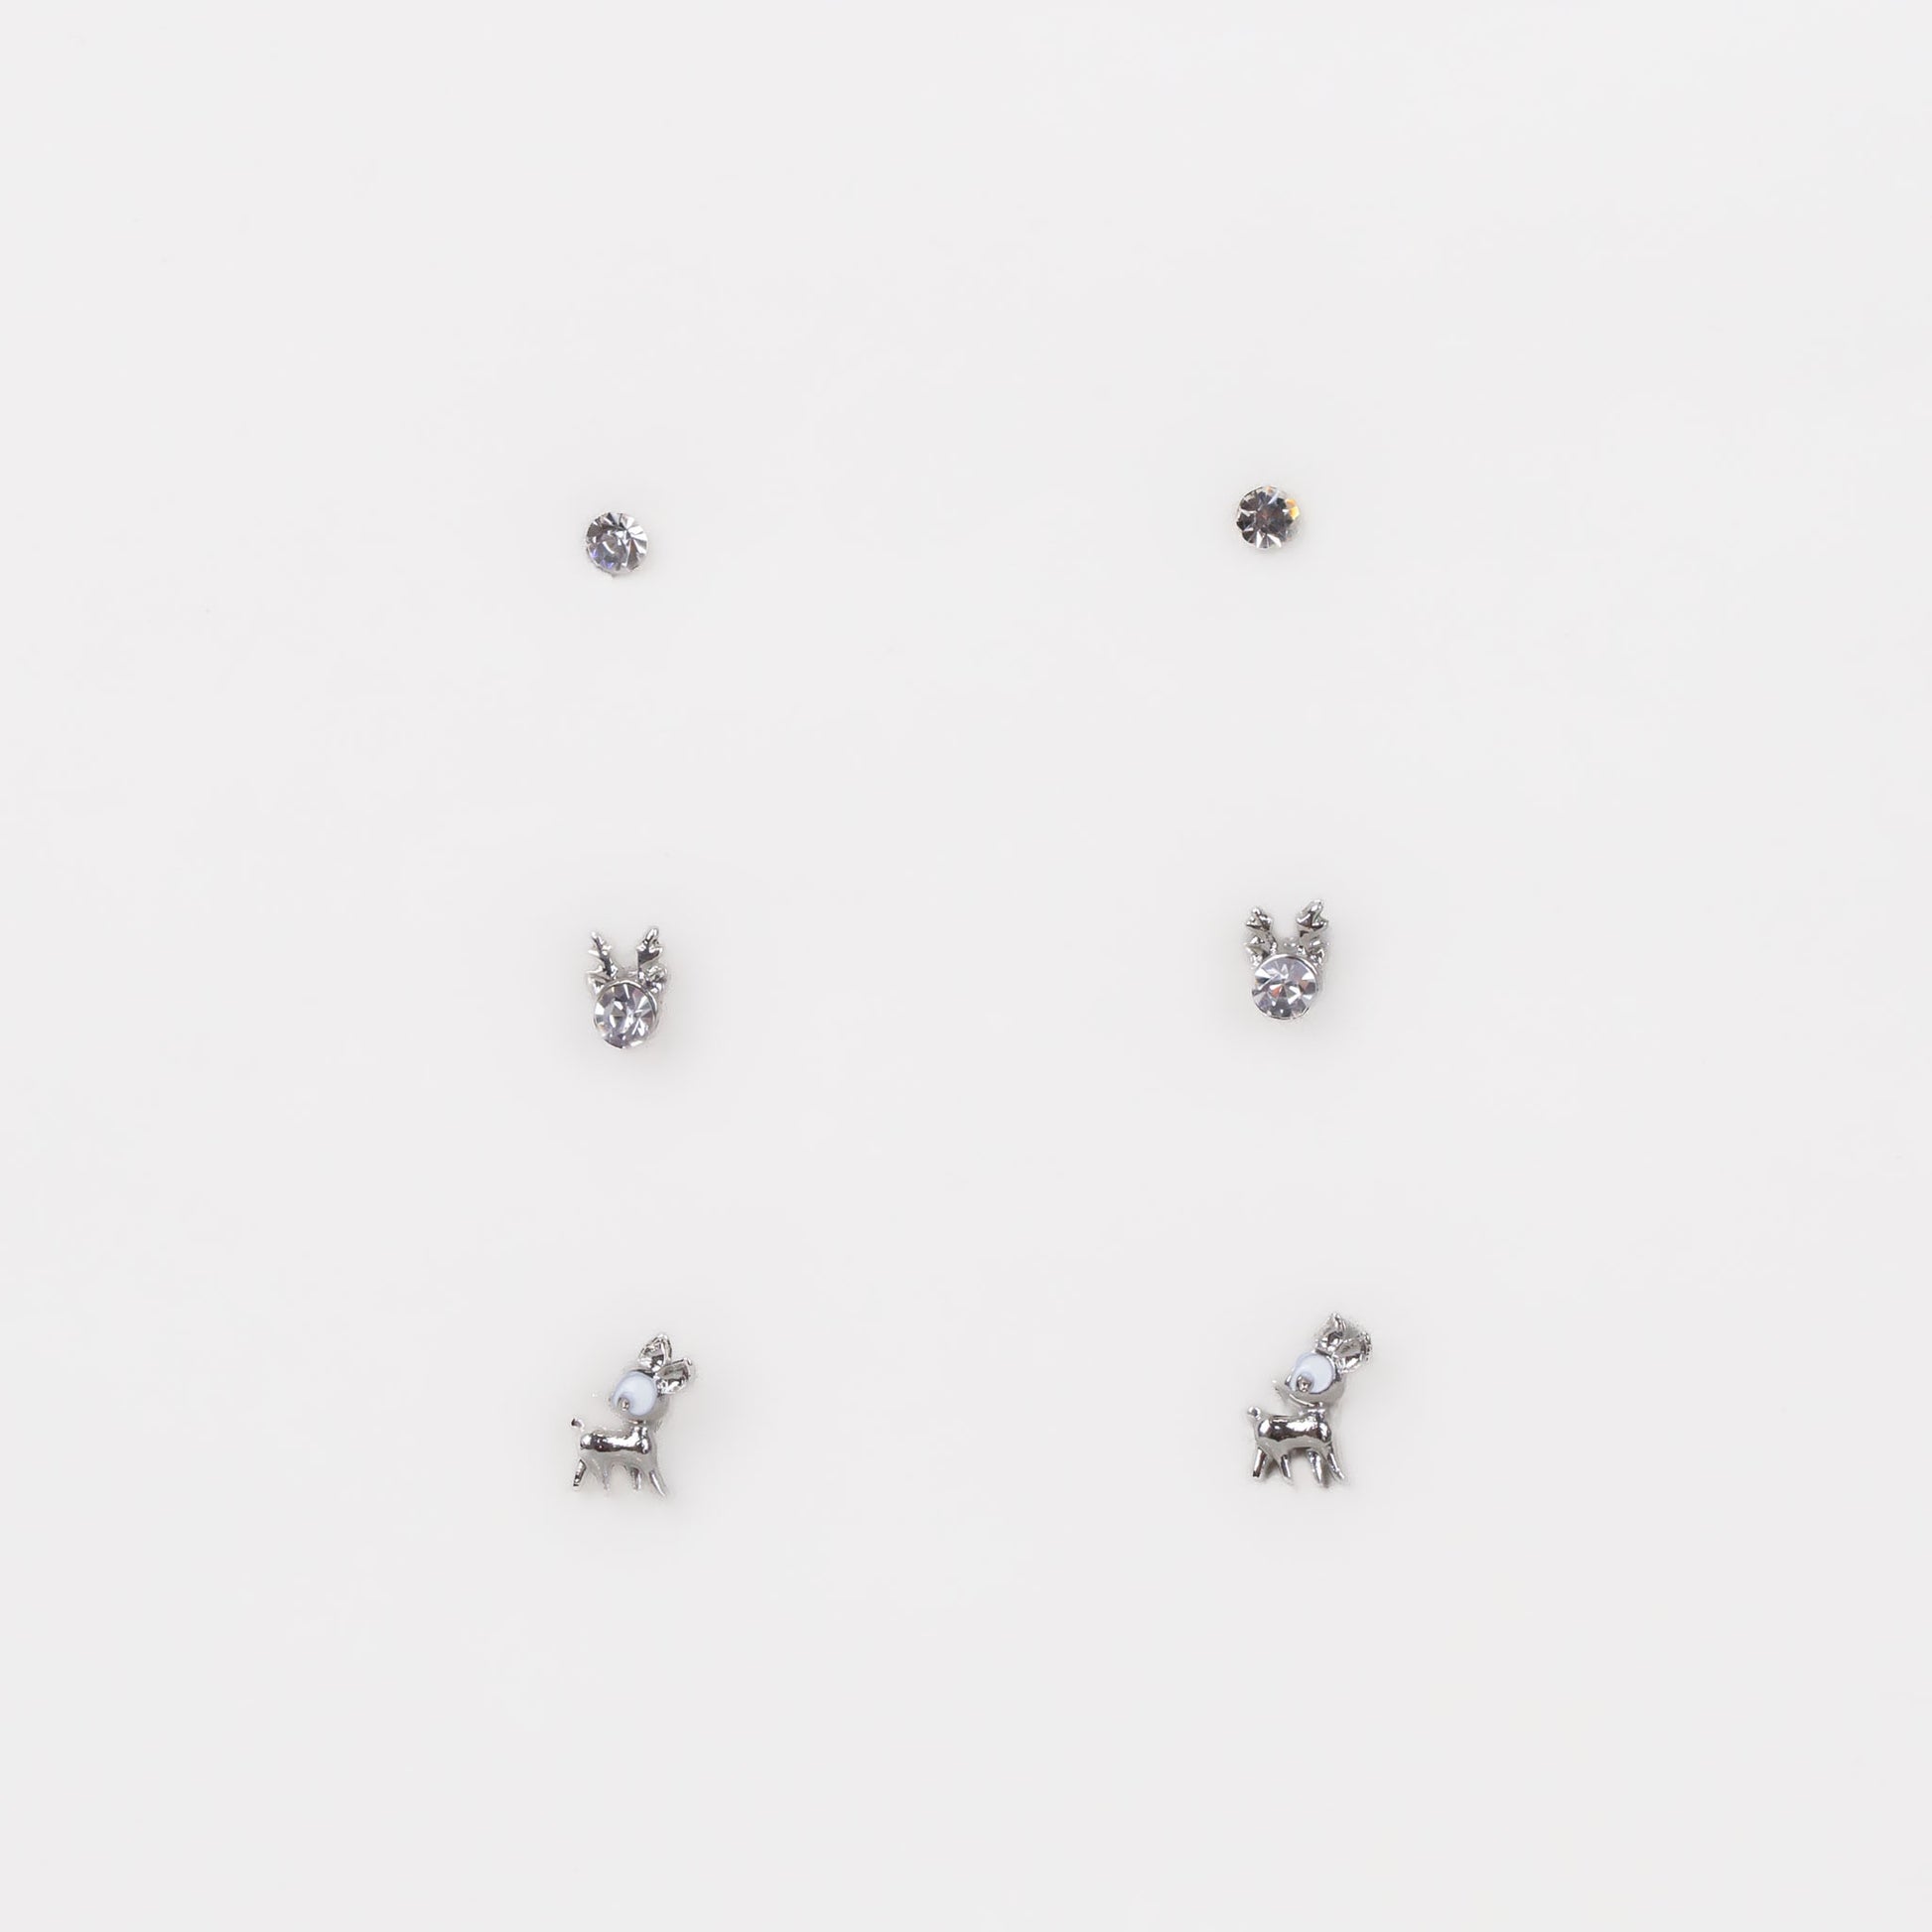 Cercei mici discreți cu reni și ștrasuri, set 3 perechi - Argintiu